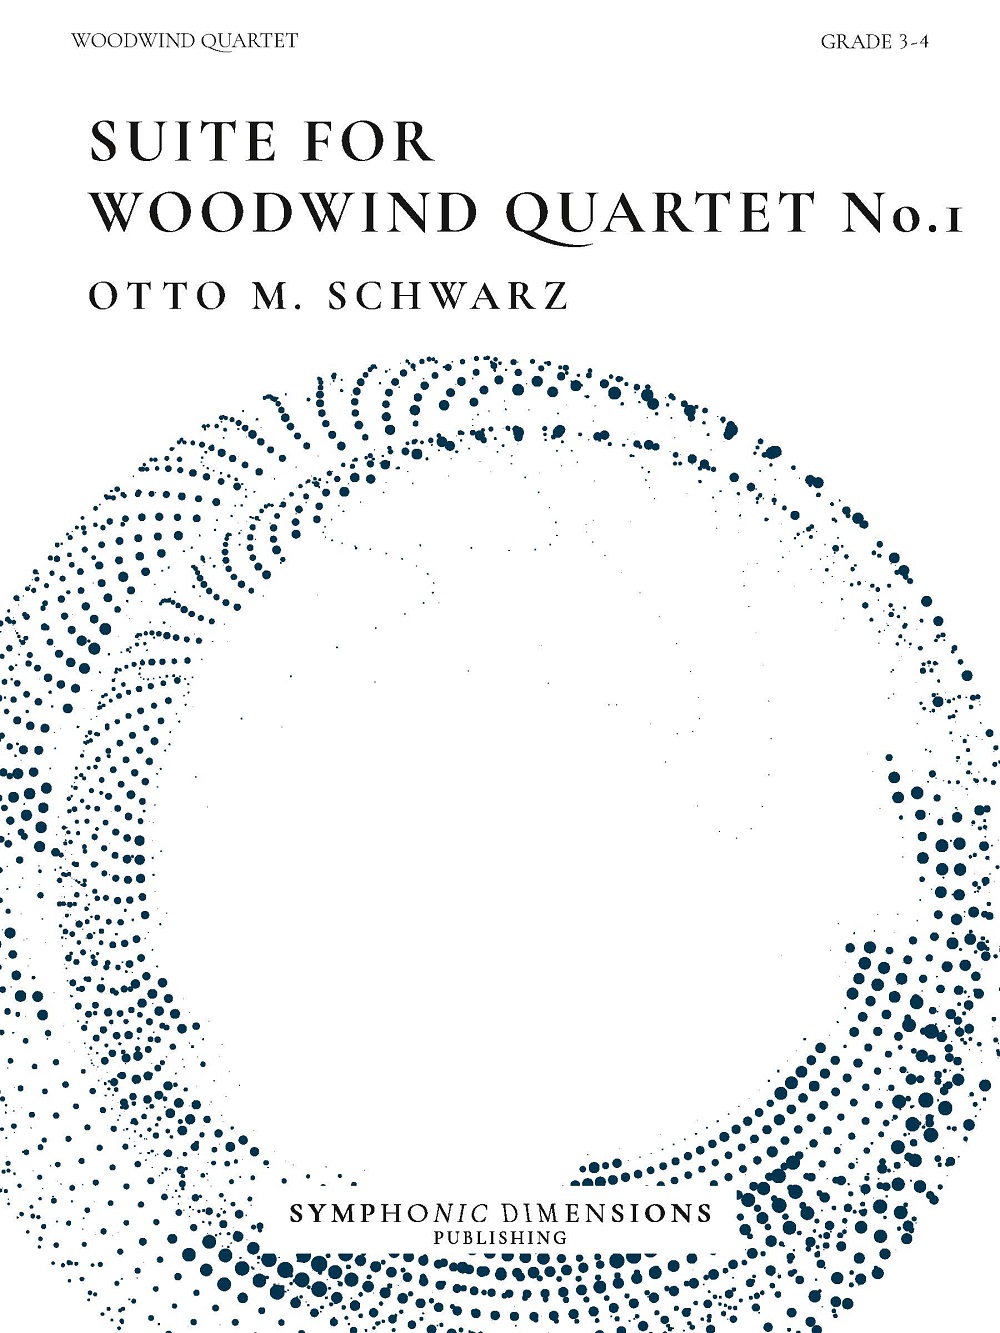 Otto M. Schwarz: Suite for Woodwind Quartet No. 1: Woodwind Quartet: Score and